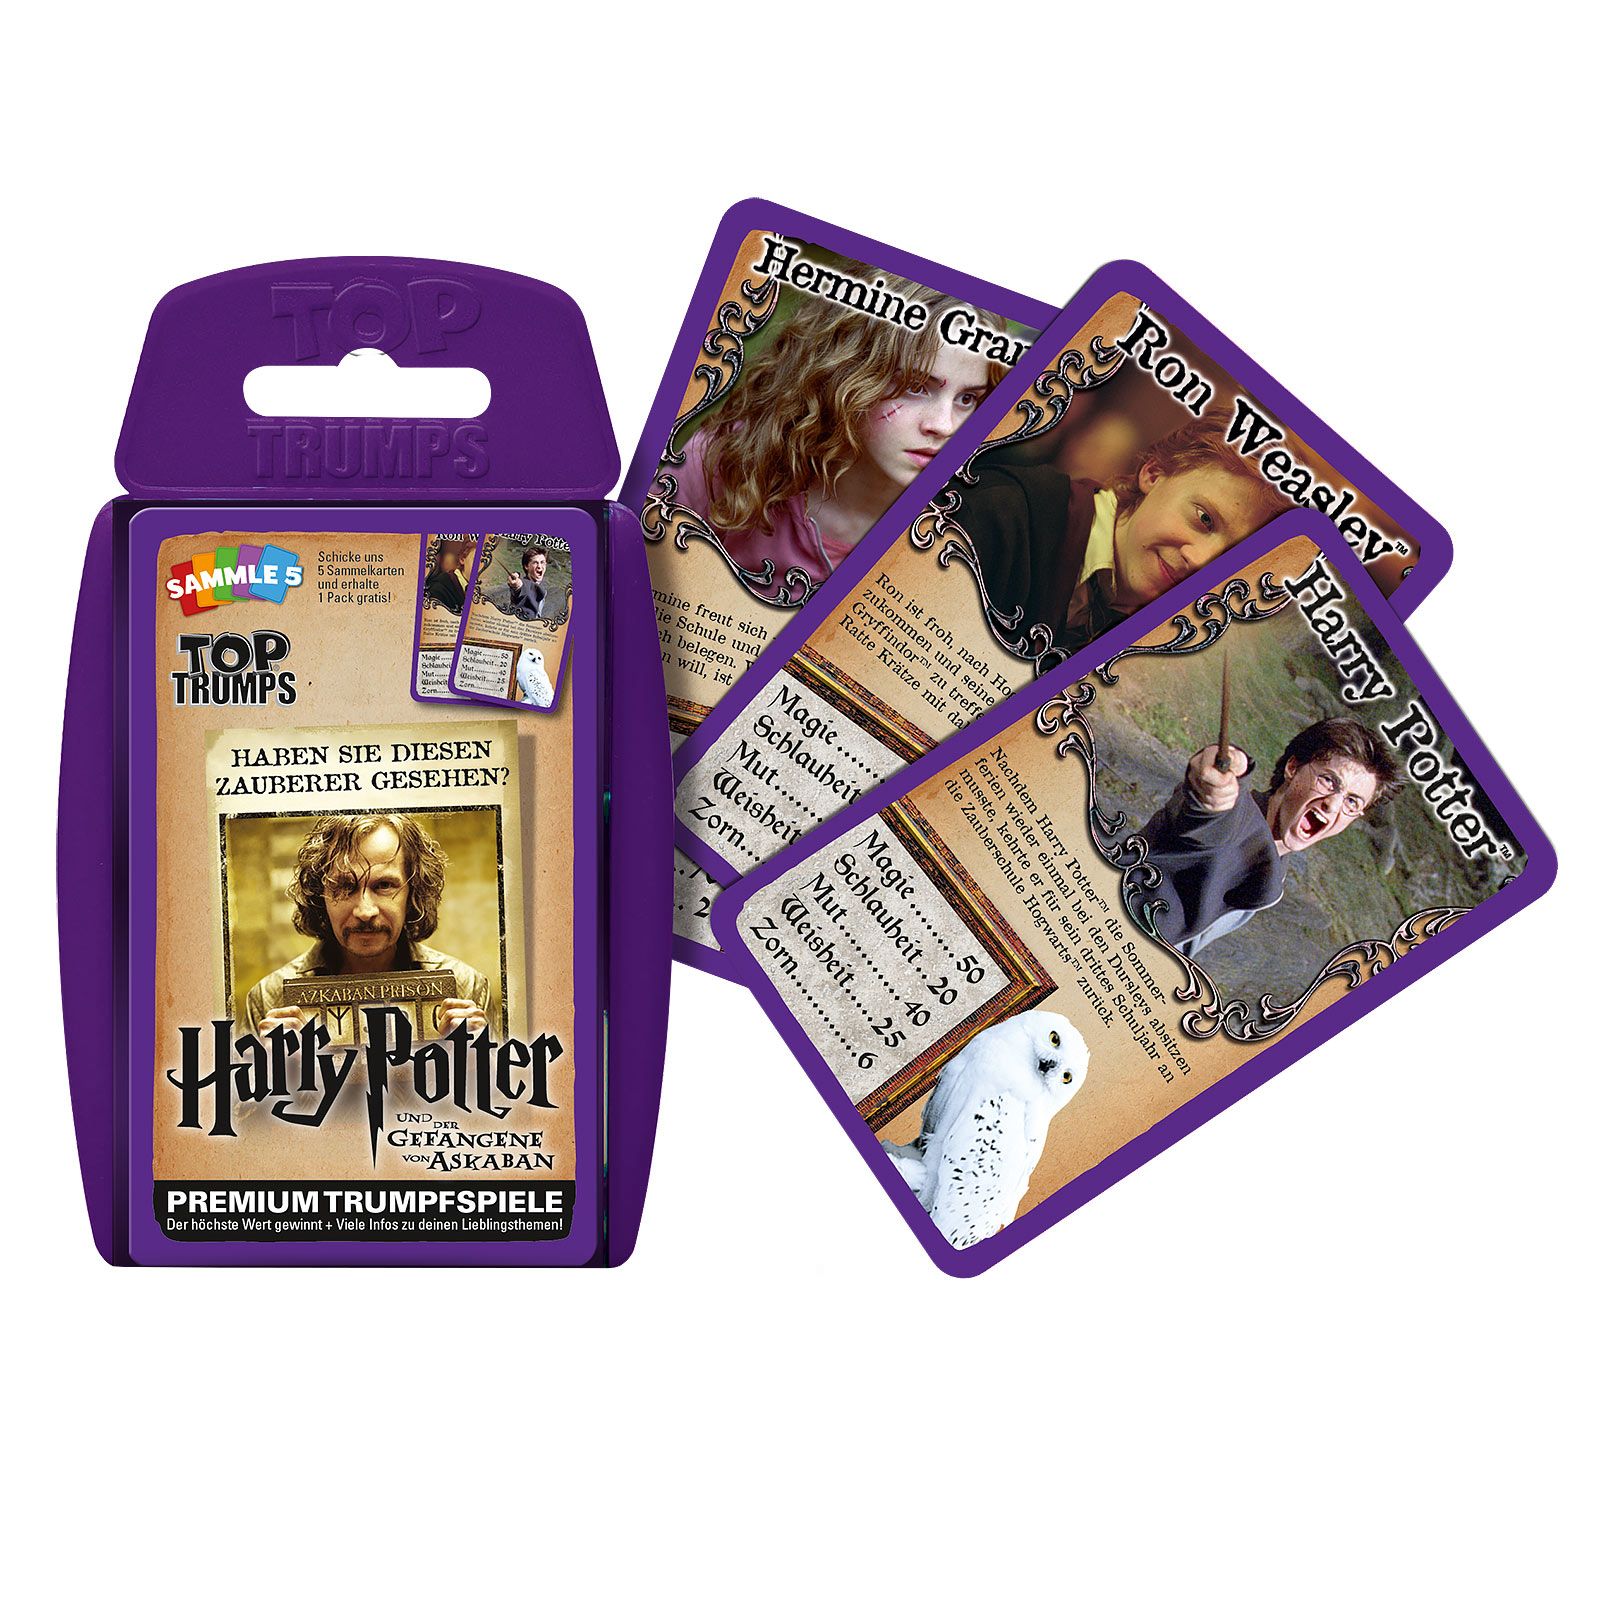 Harry Potter en de Gevangene van Azkaban Top Trumps Speelkaarten